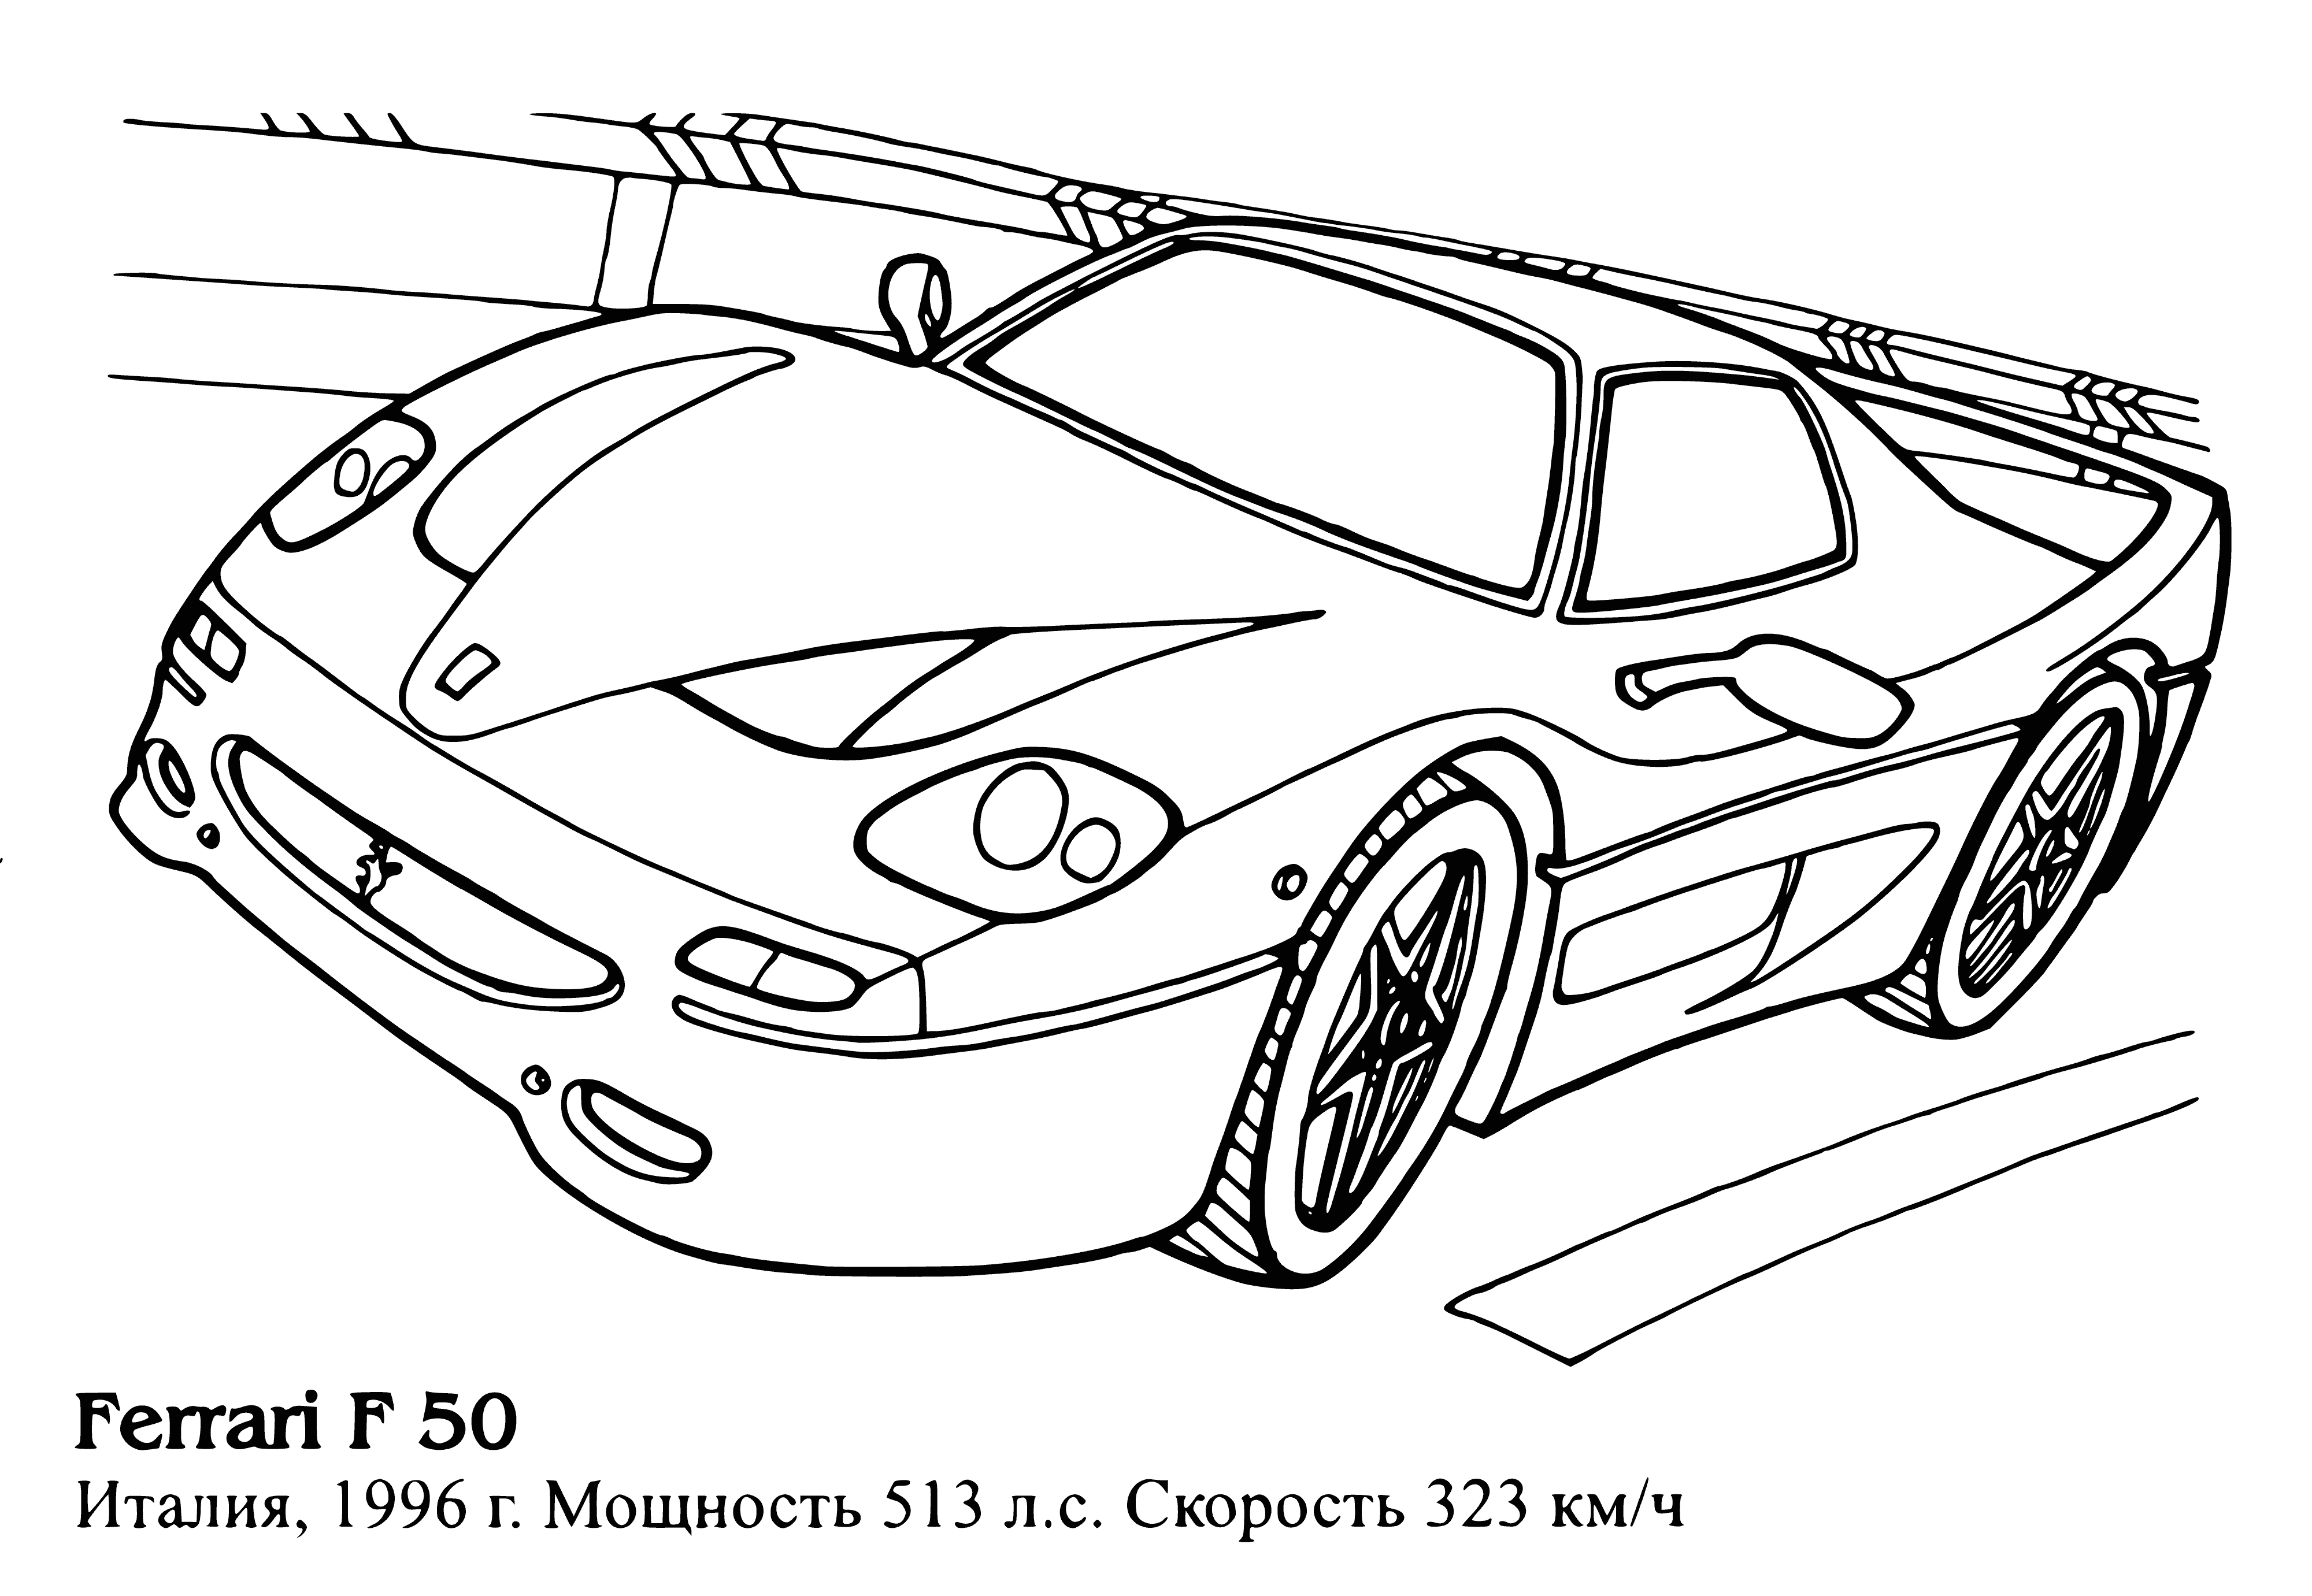 Ferrari F50 coloring page